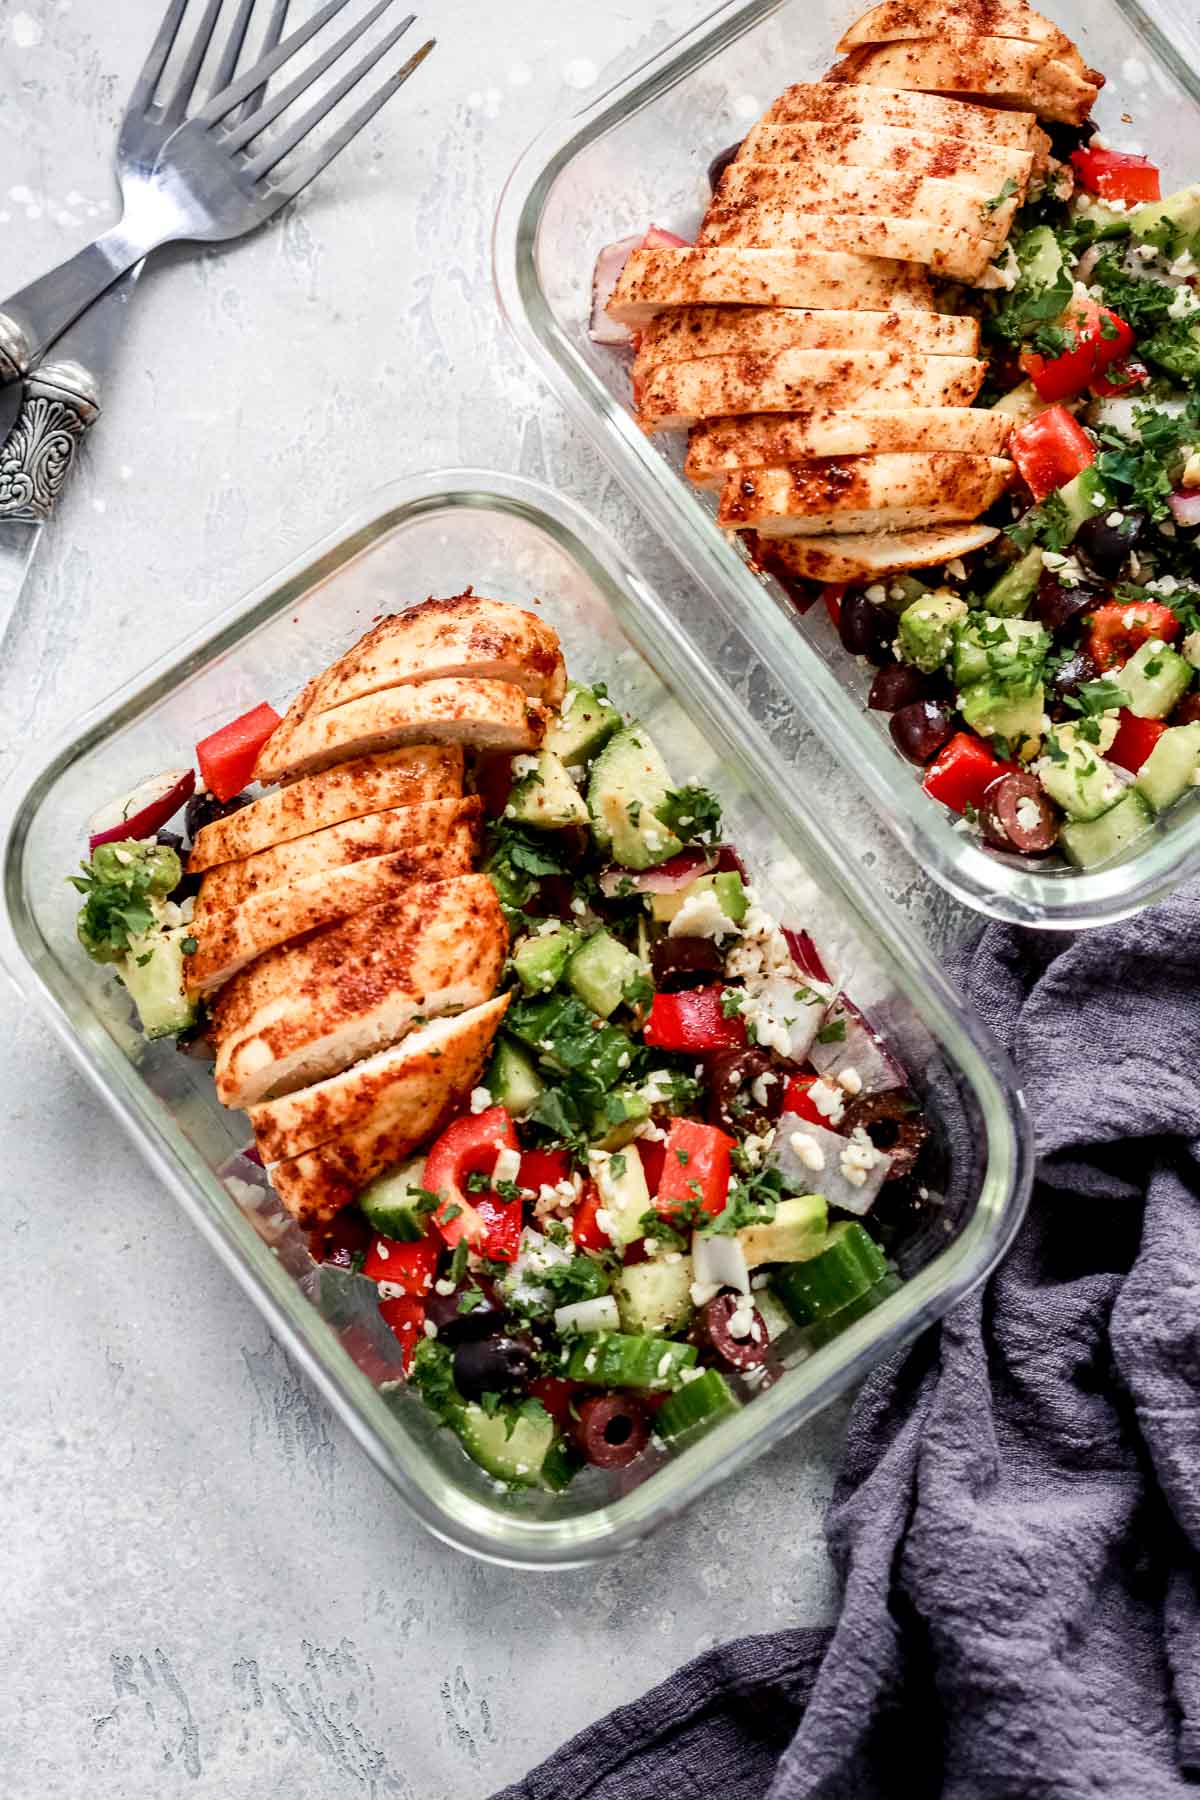 https://www.primaverakitchen.com/wp-content/uploads/2020/01/Greek-Chicken-Salad-Bowls-Meal-Prep-Primavera-Kitchen-1.jpg